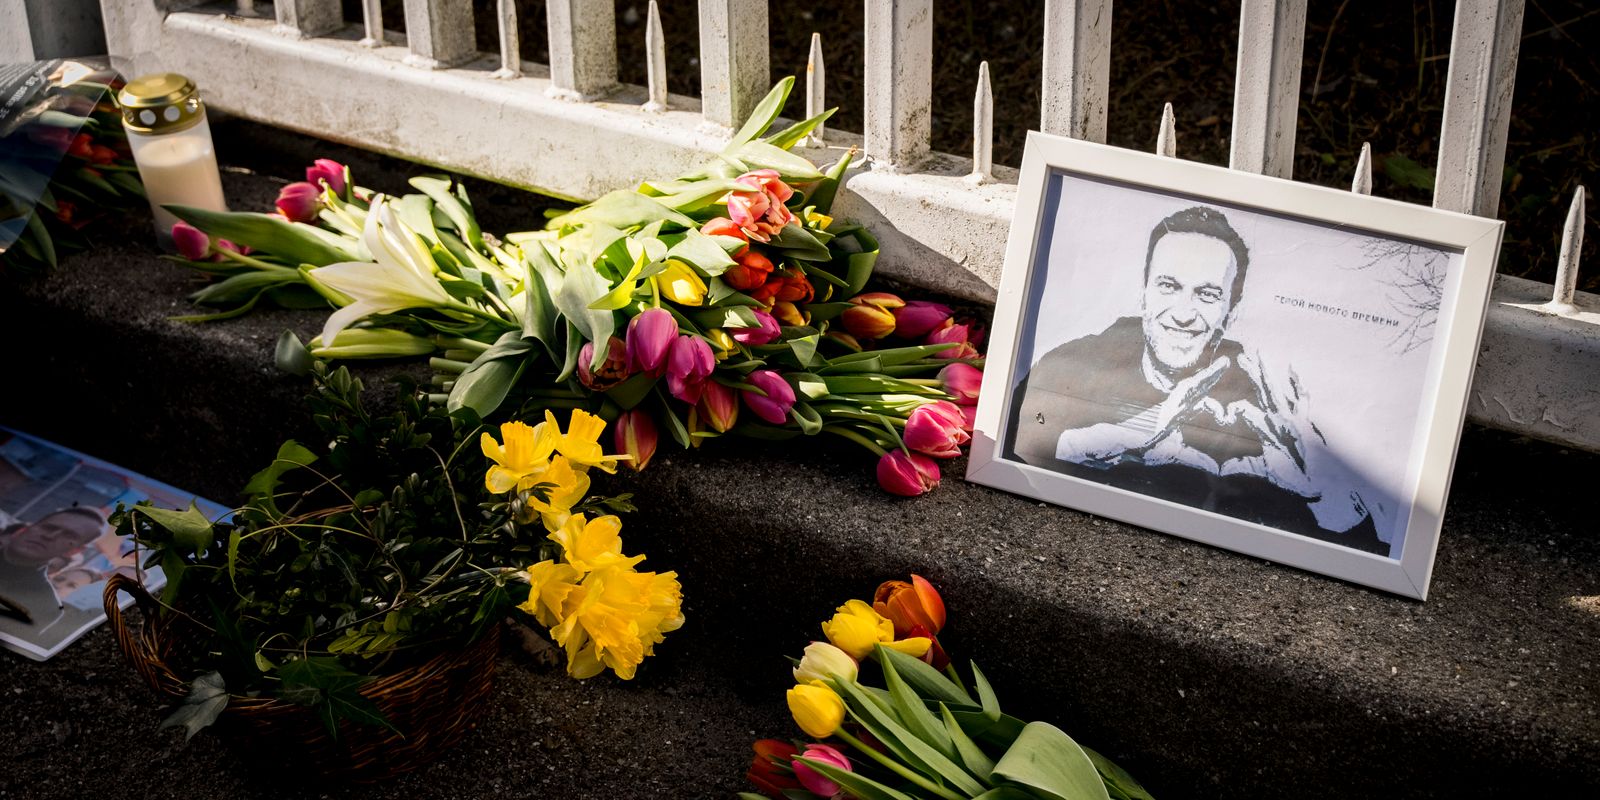 navalnyj skrev memoar i fängelse – släpps i oktober